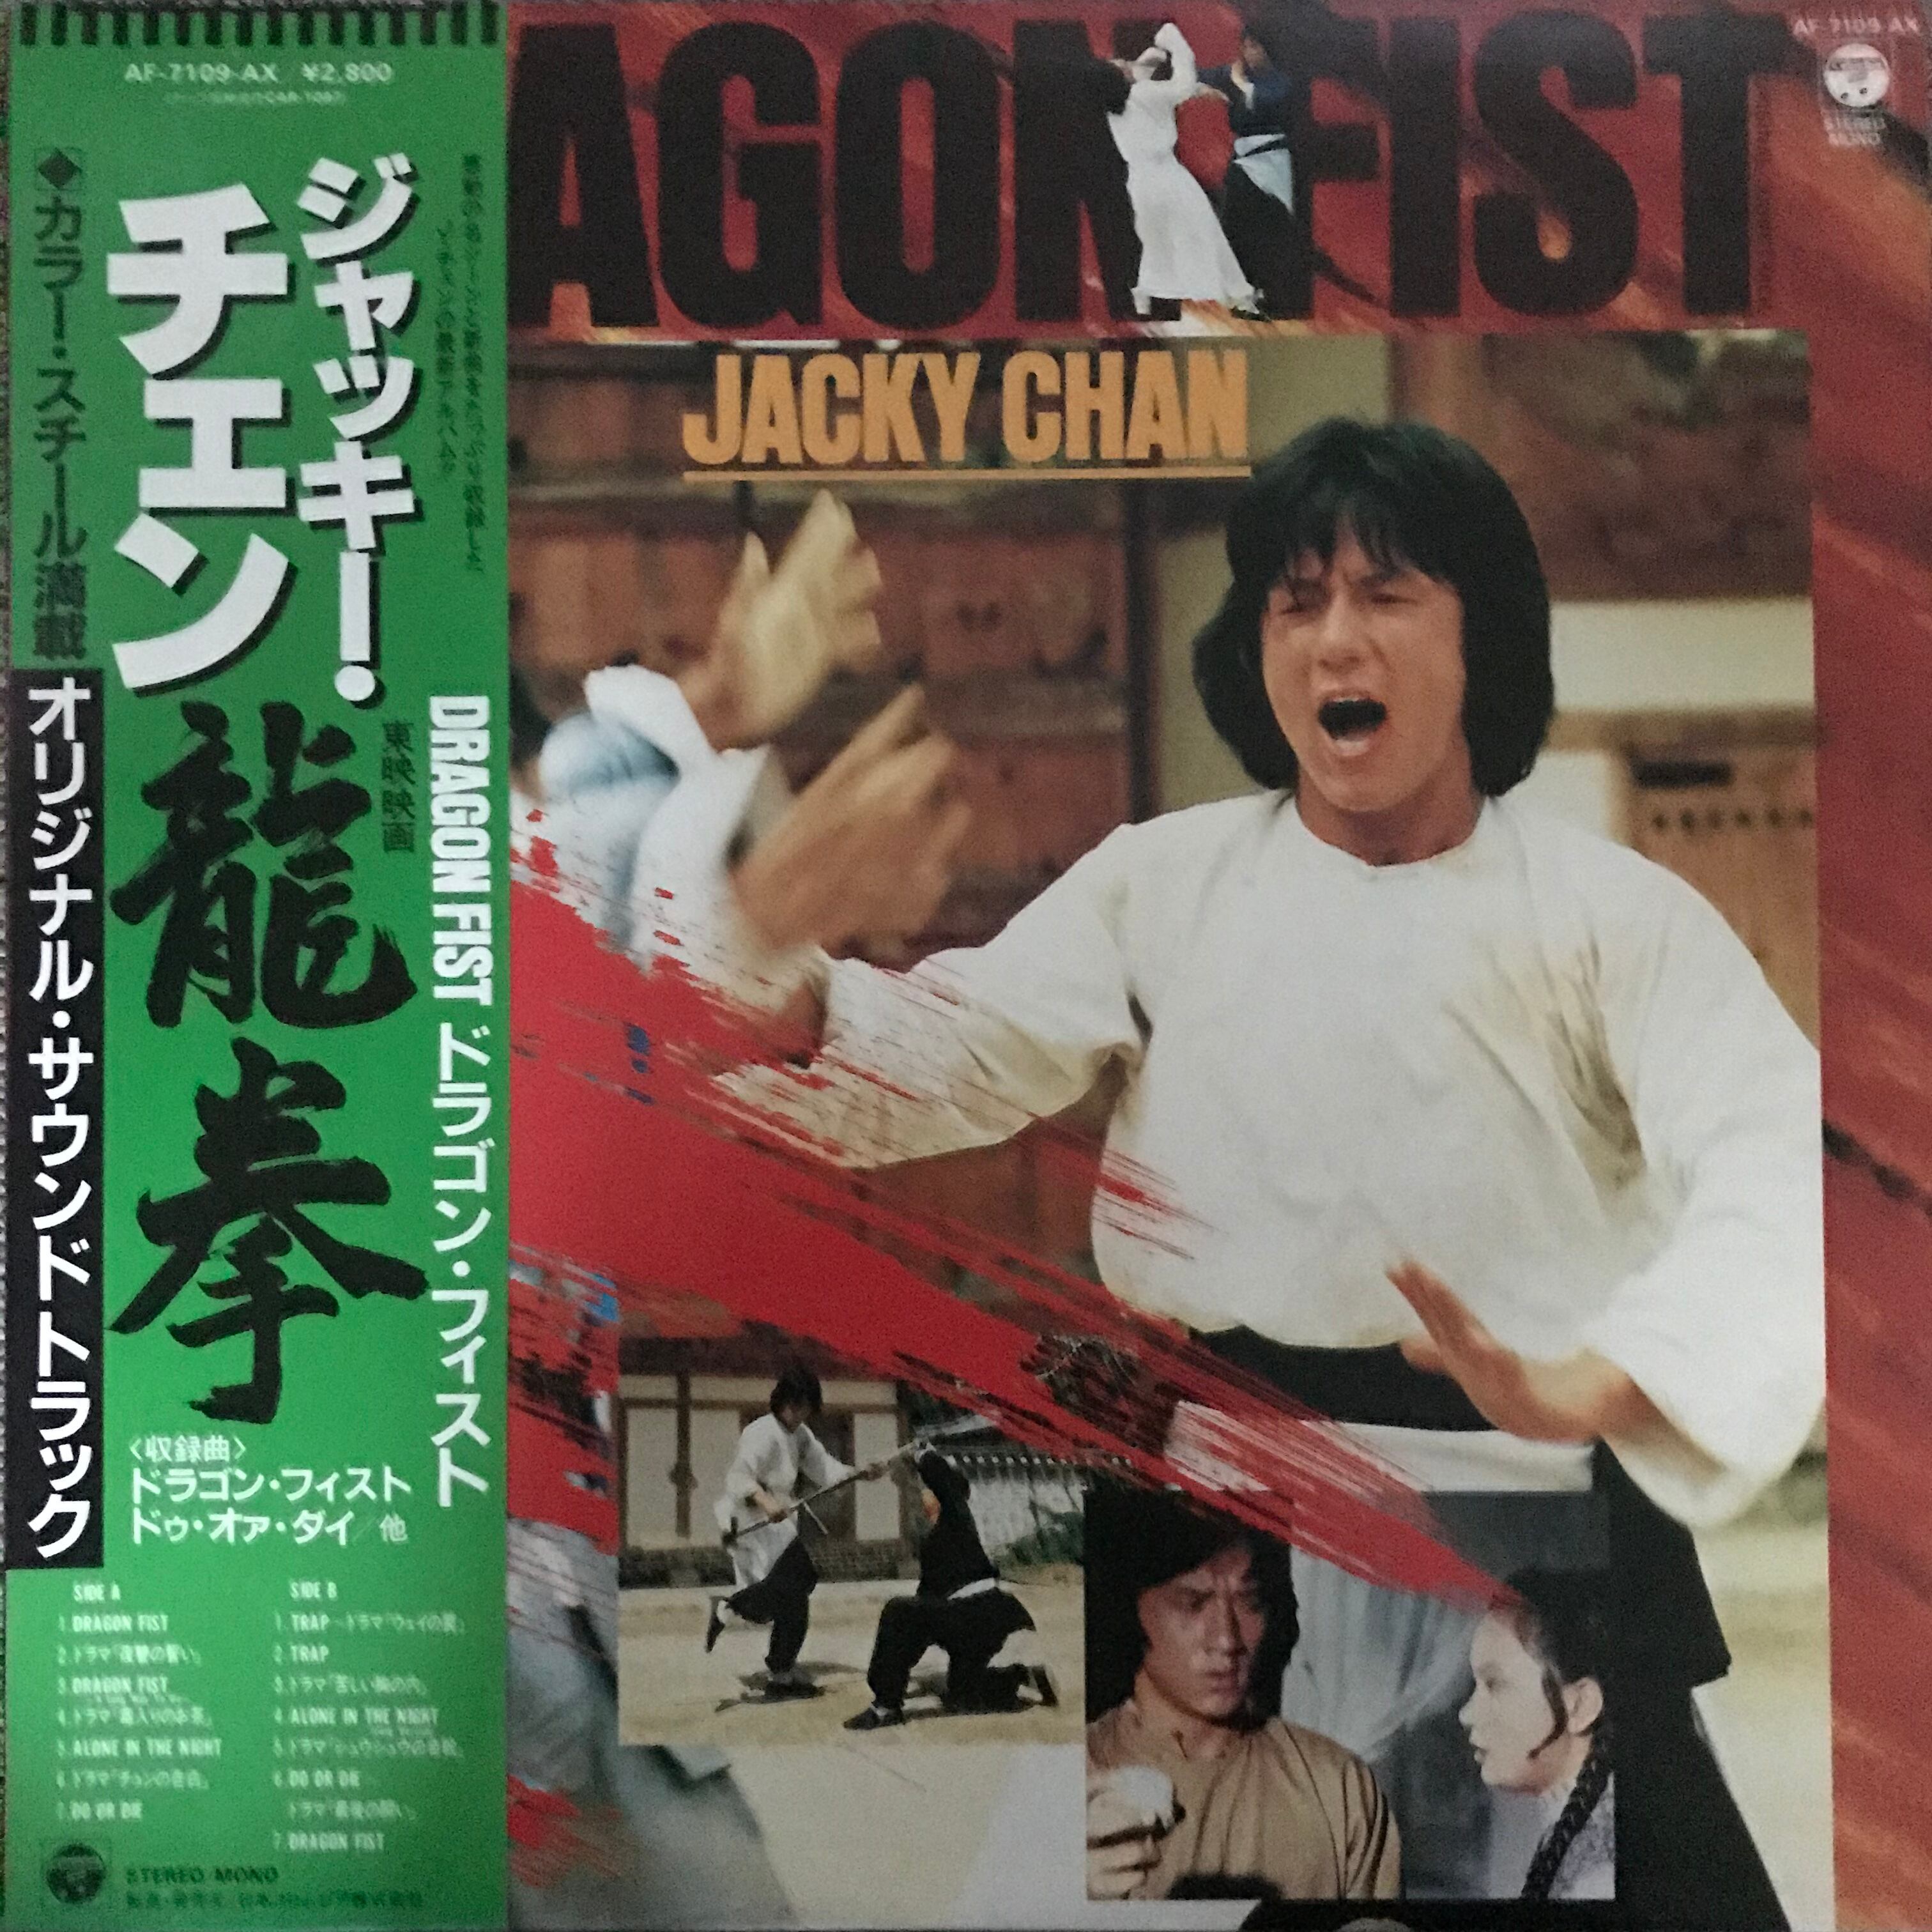 Ost 龍拳 ドラゴン フィスト Passtime Records パスタイム レコード